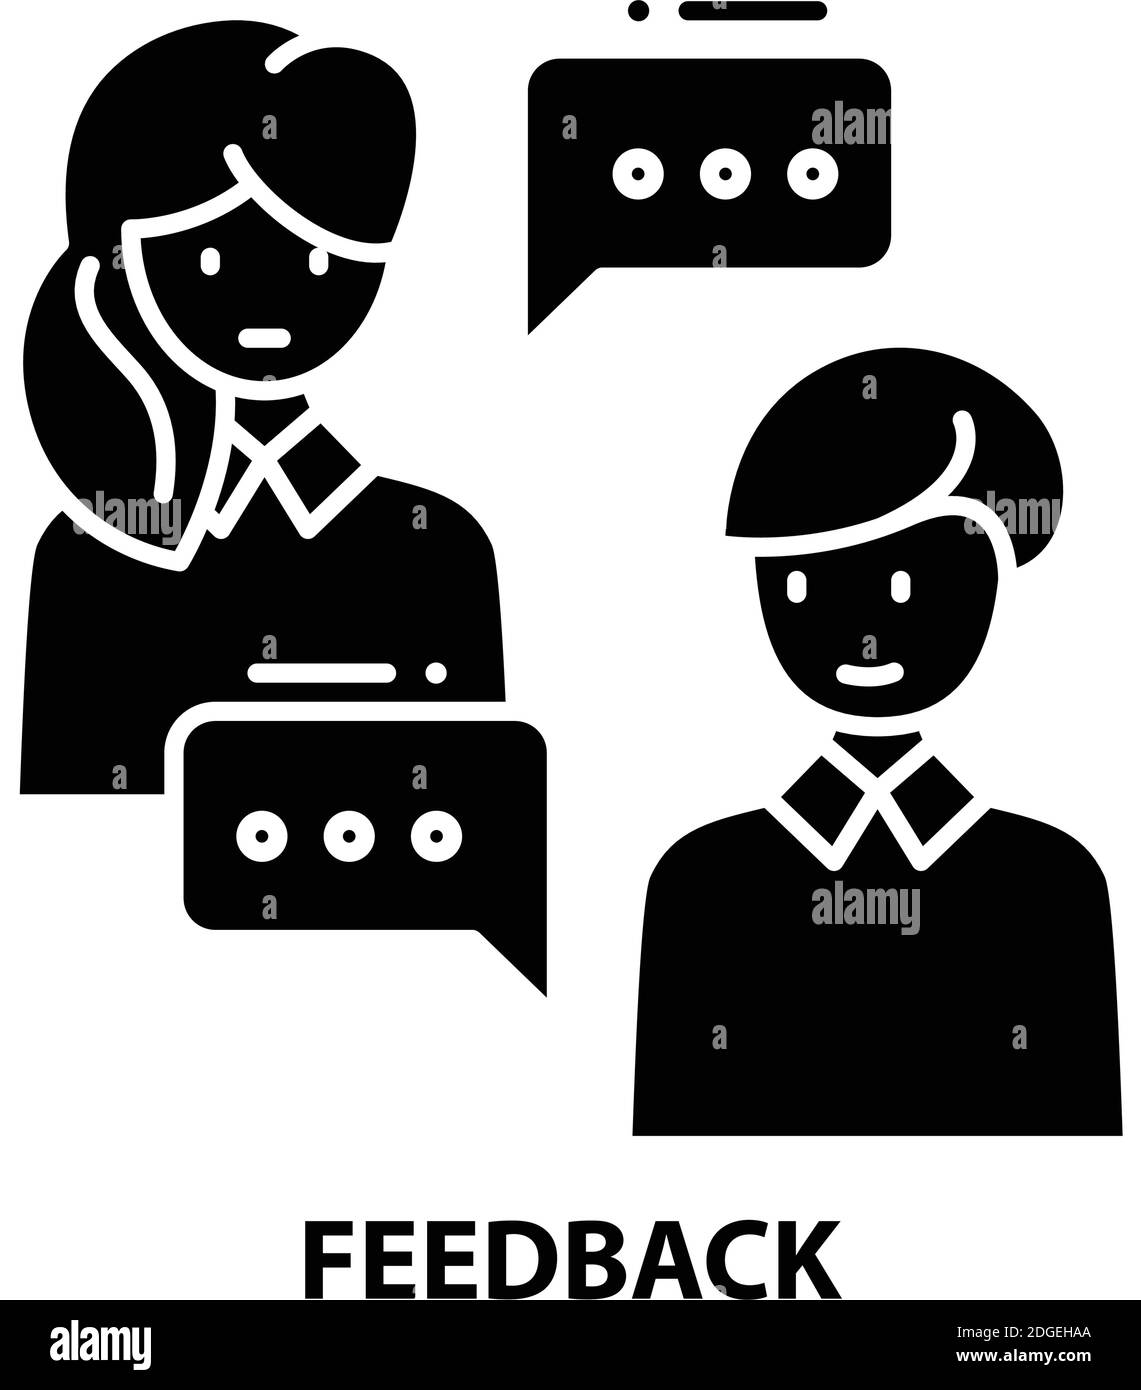 Feedback-Symbol, schwarzes Vektorzeichen mit editierbaren Konturen, Konzeptdarstellung Stock Vektor